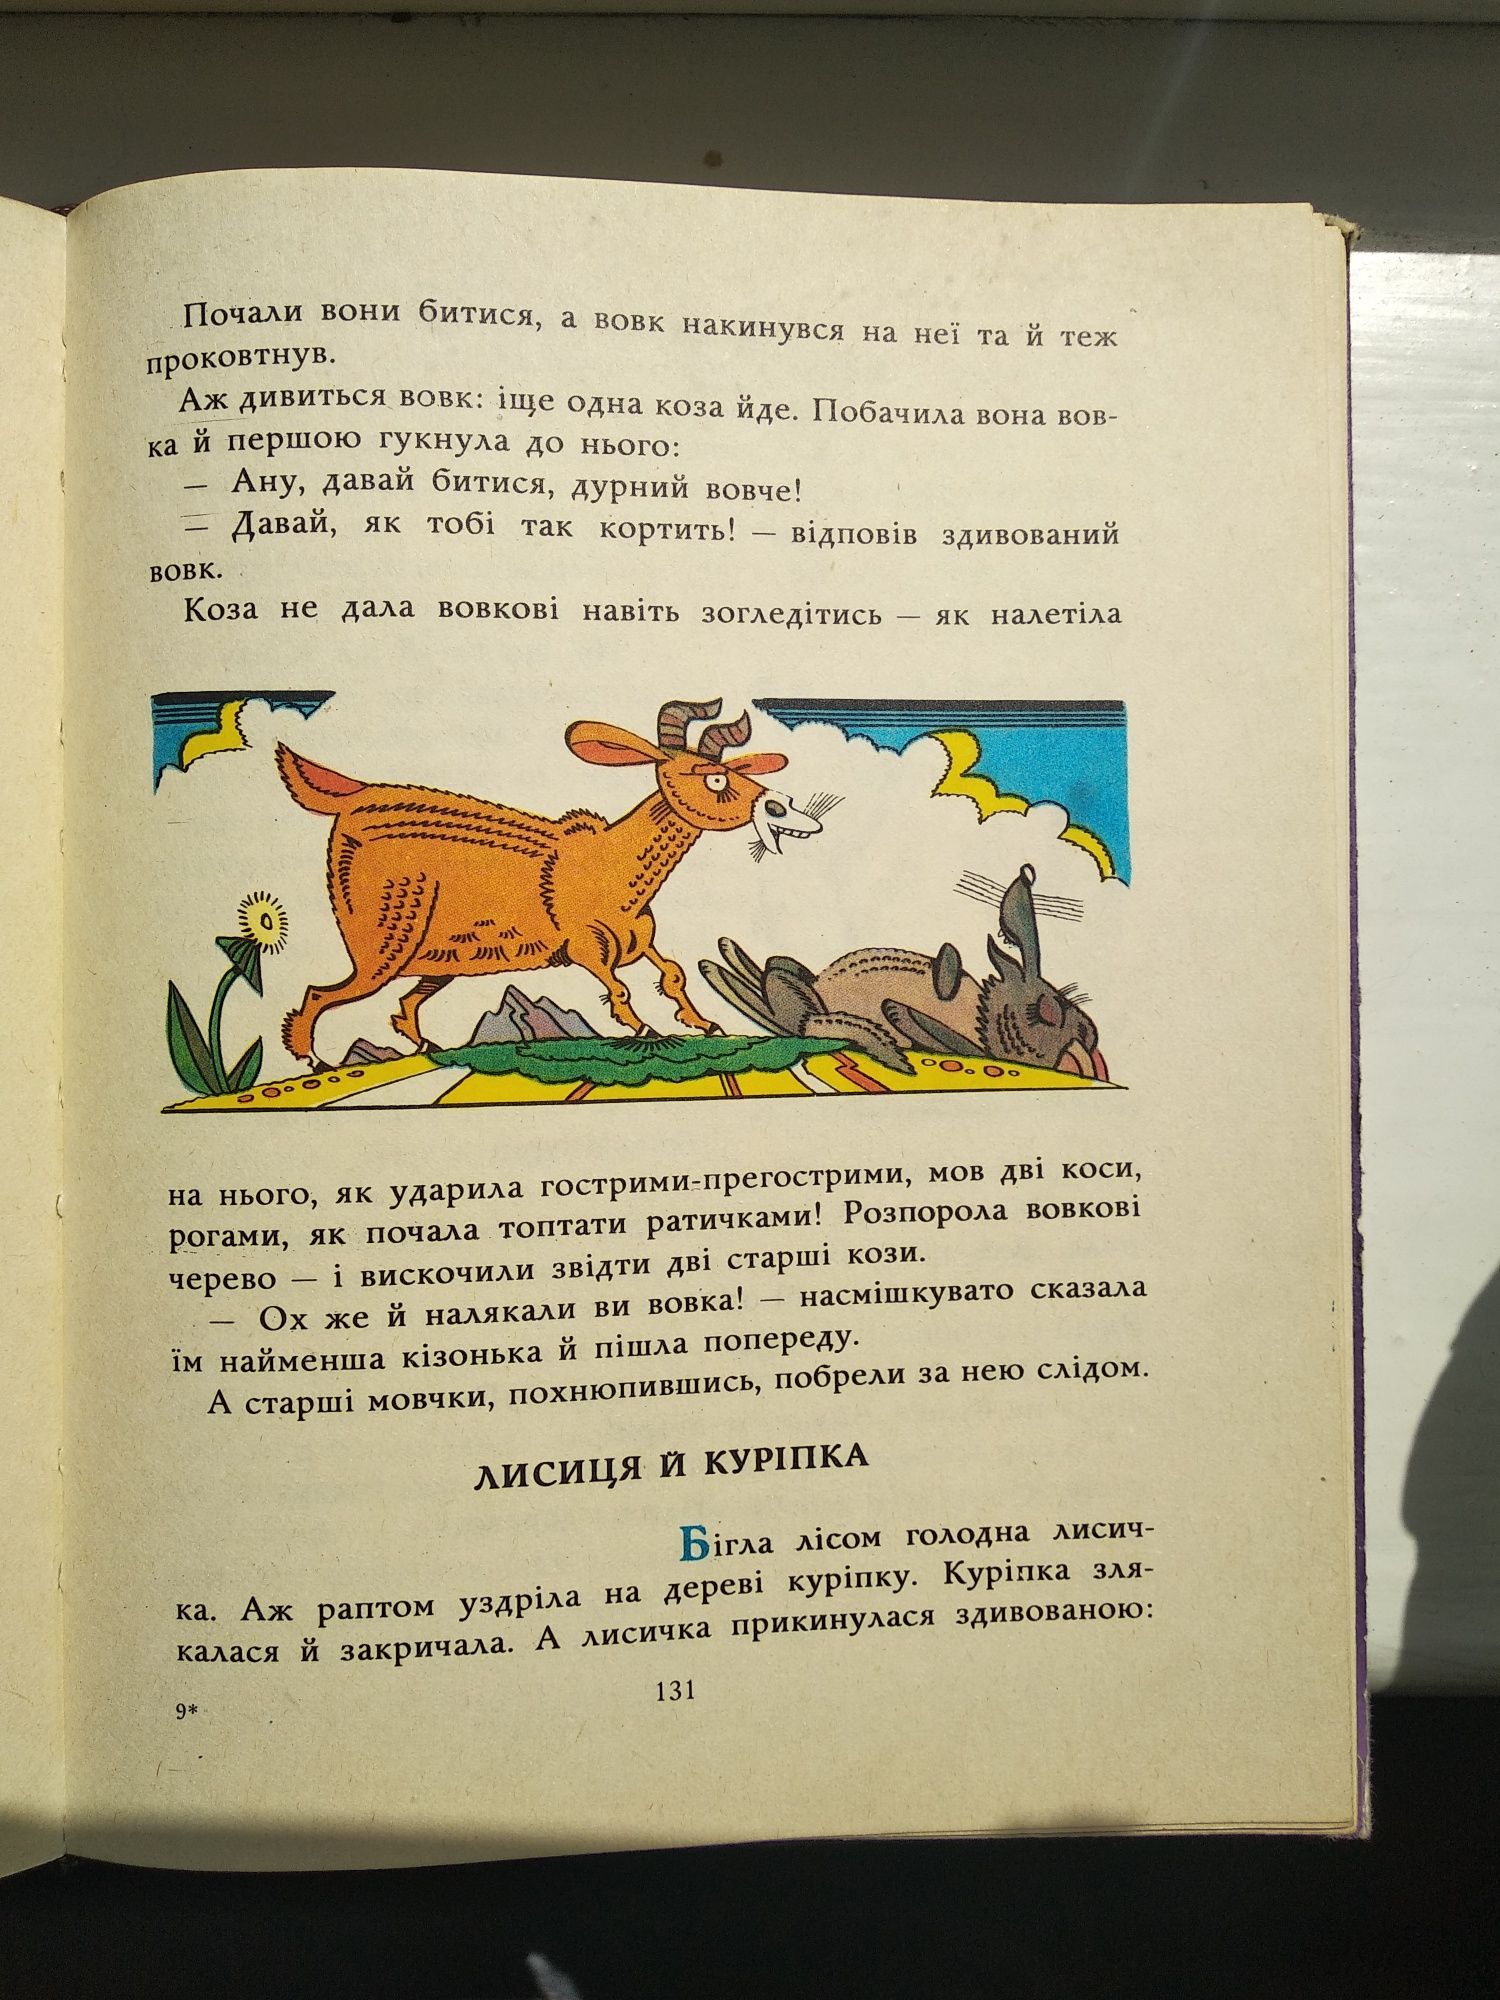 Книга Чечено-ингуские народные сказки (со смыслом, на укр. яз.)